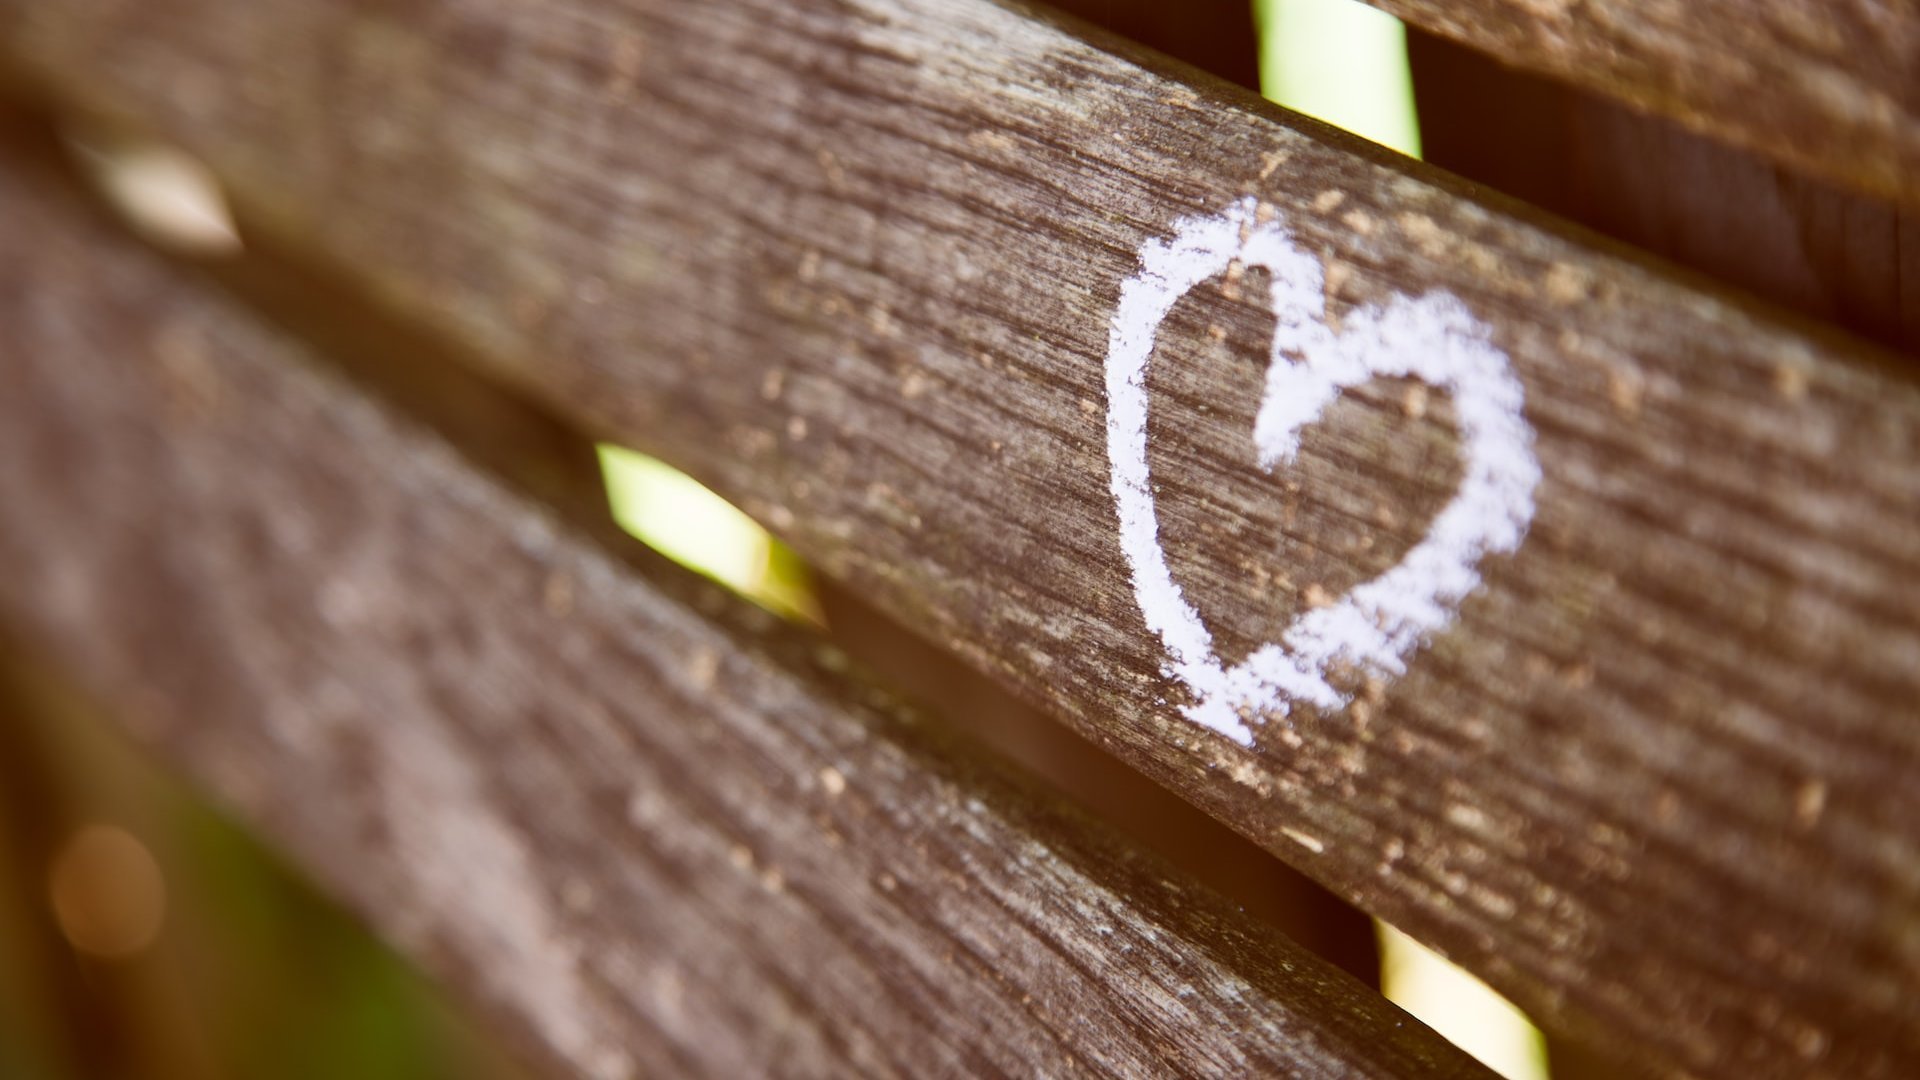 Coração desenhado em giz, em um banco de madeira.